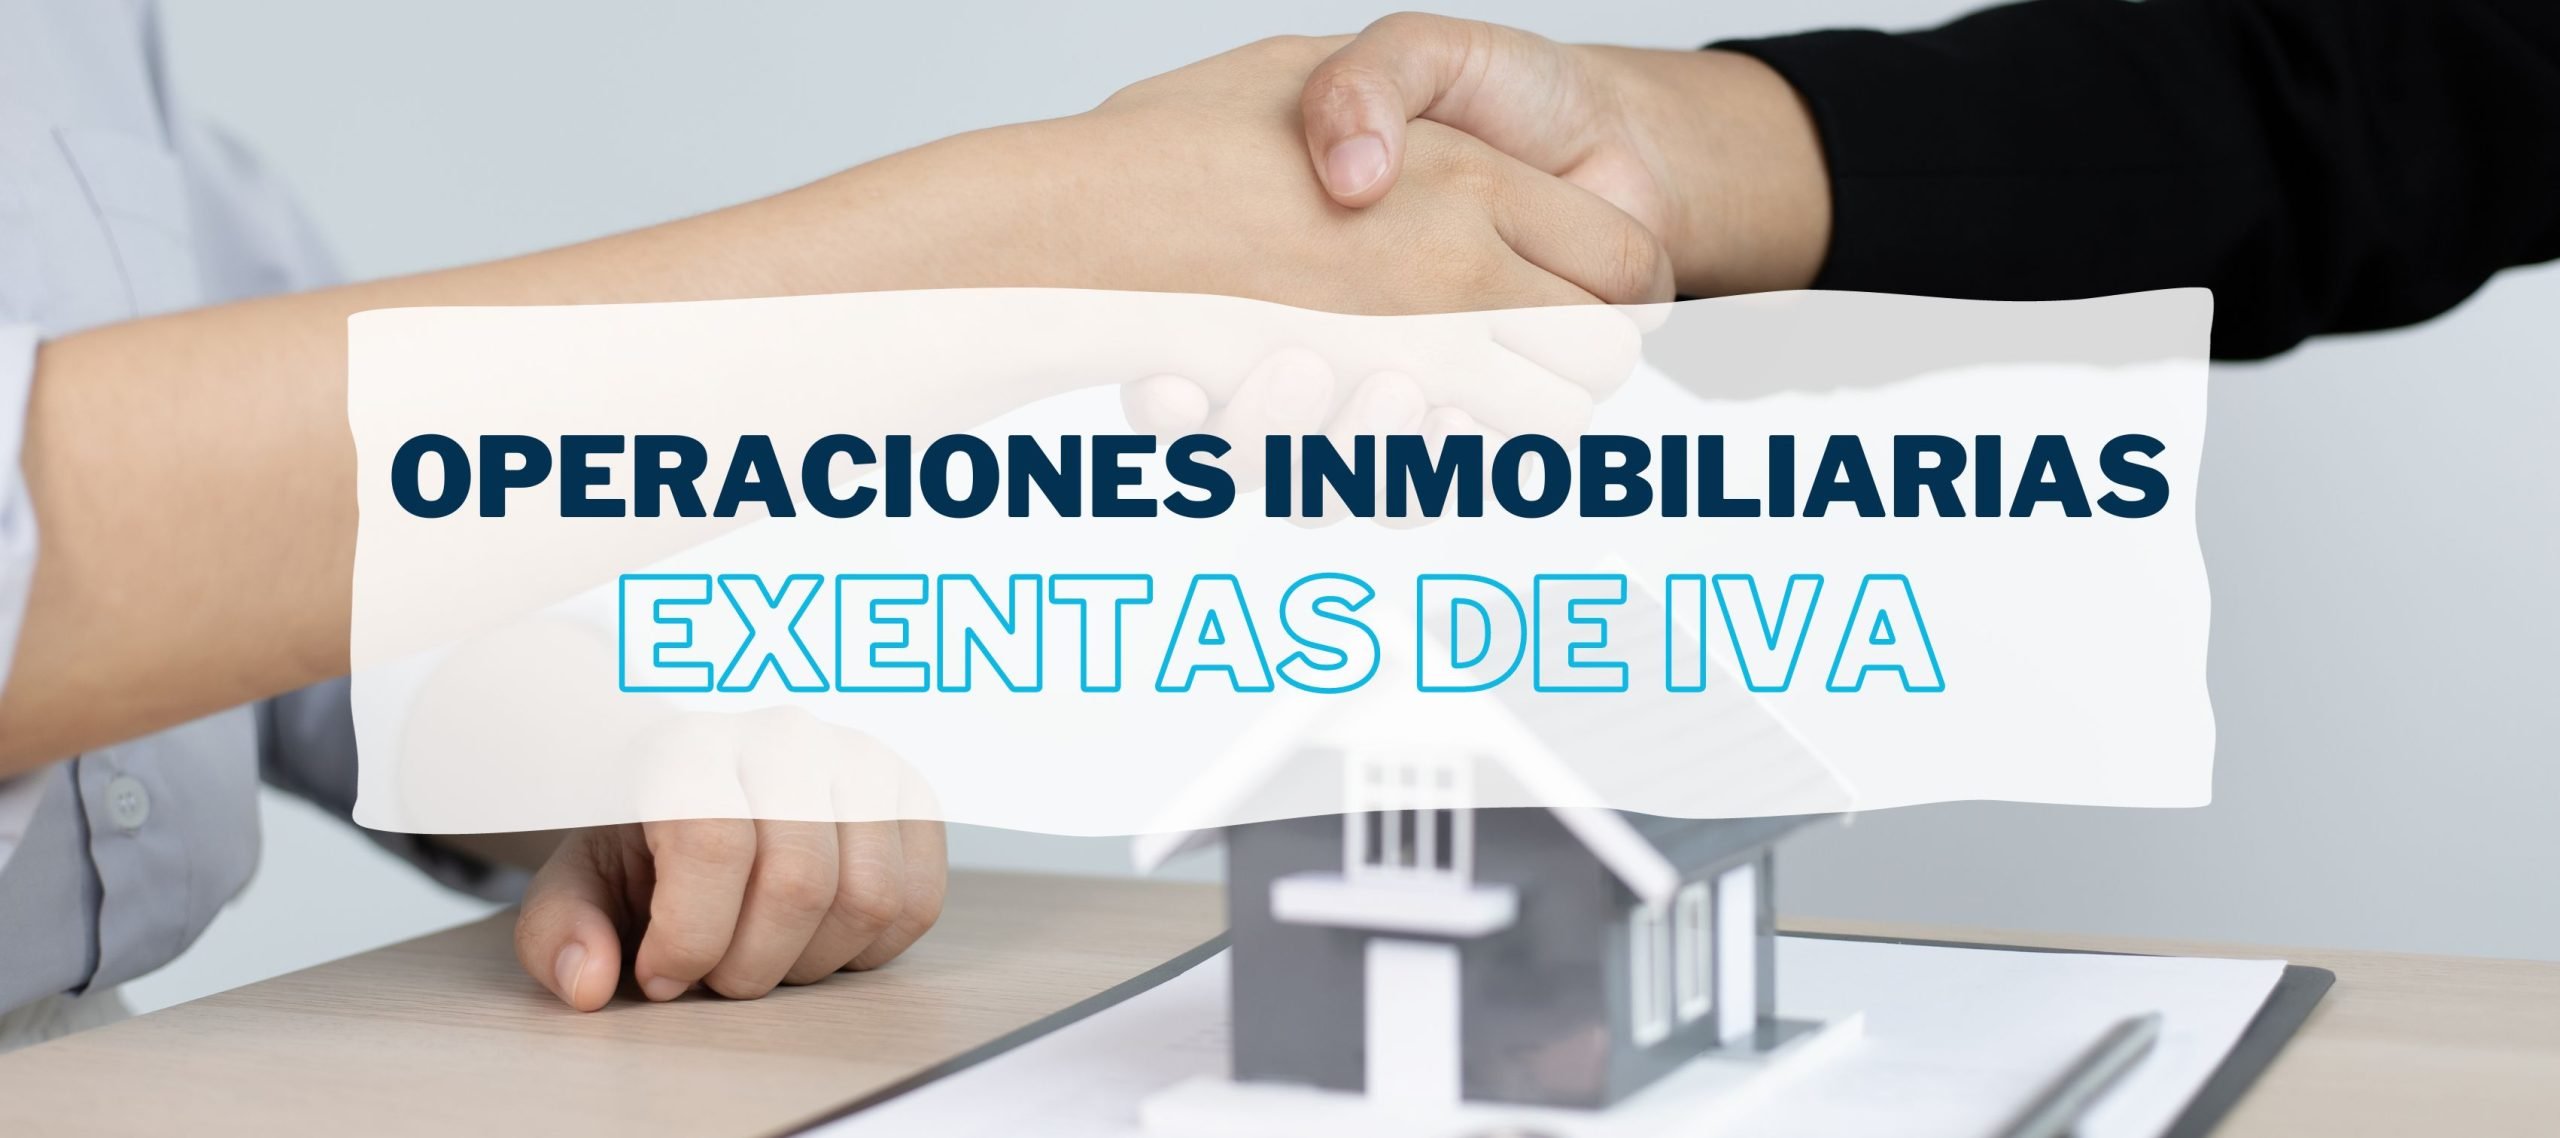 Dos personas entrelazan manos sobre una casa en miniatura para hablar de las operaciones inmobiliarias exentas de IVA.